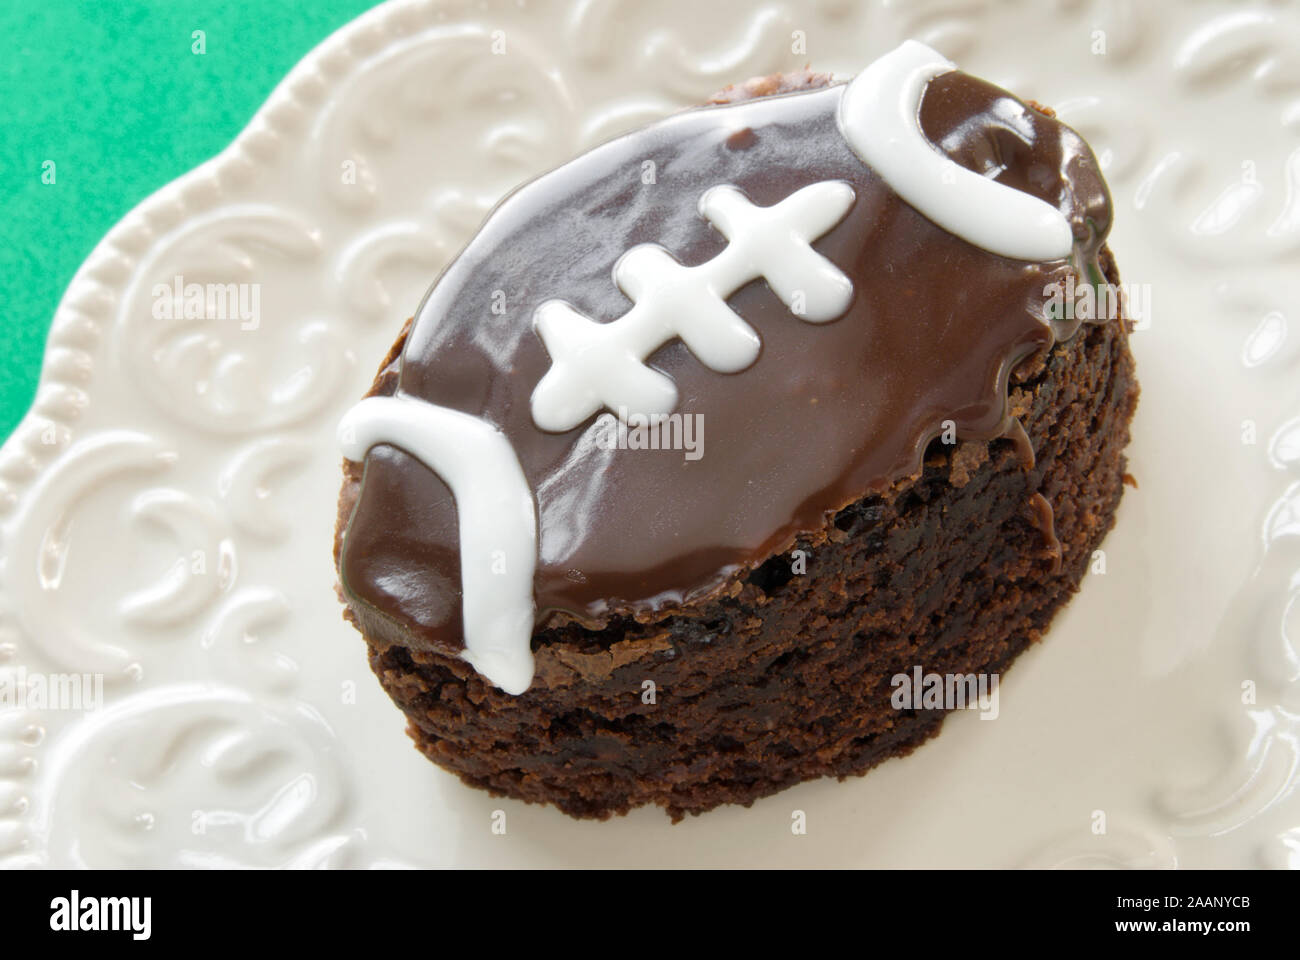 In casa a forma di pallone da football double fudge ghiacciata di cioccolato brownie con piping bianco servito su una piastra. Foto Stock